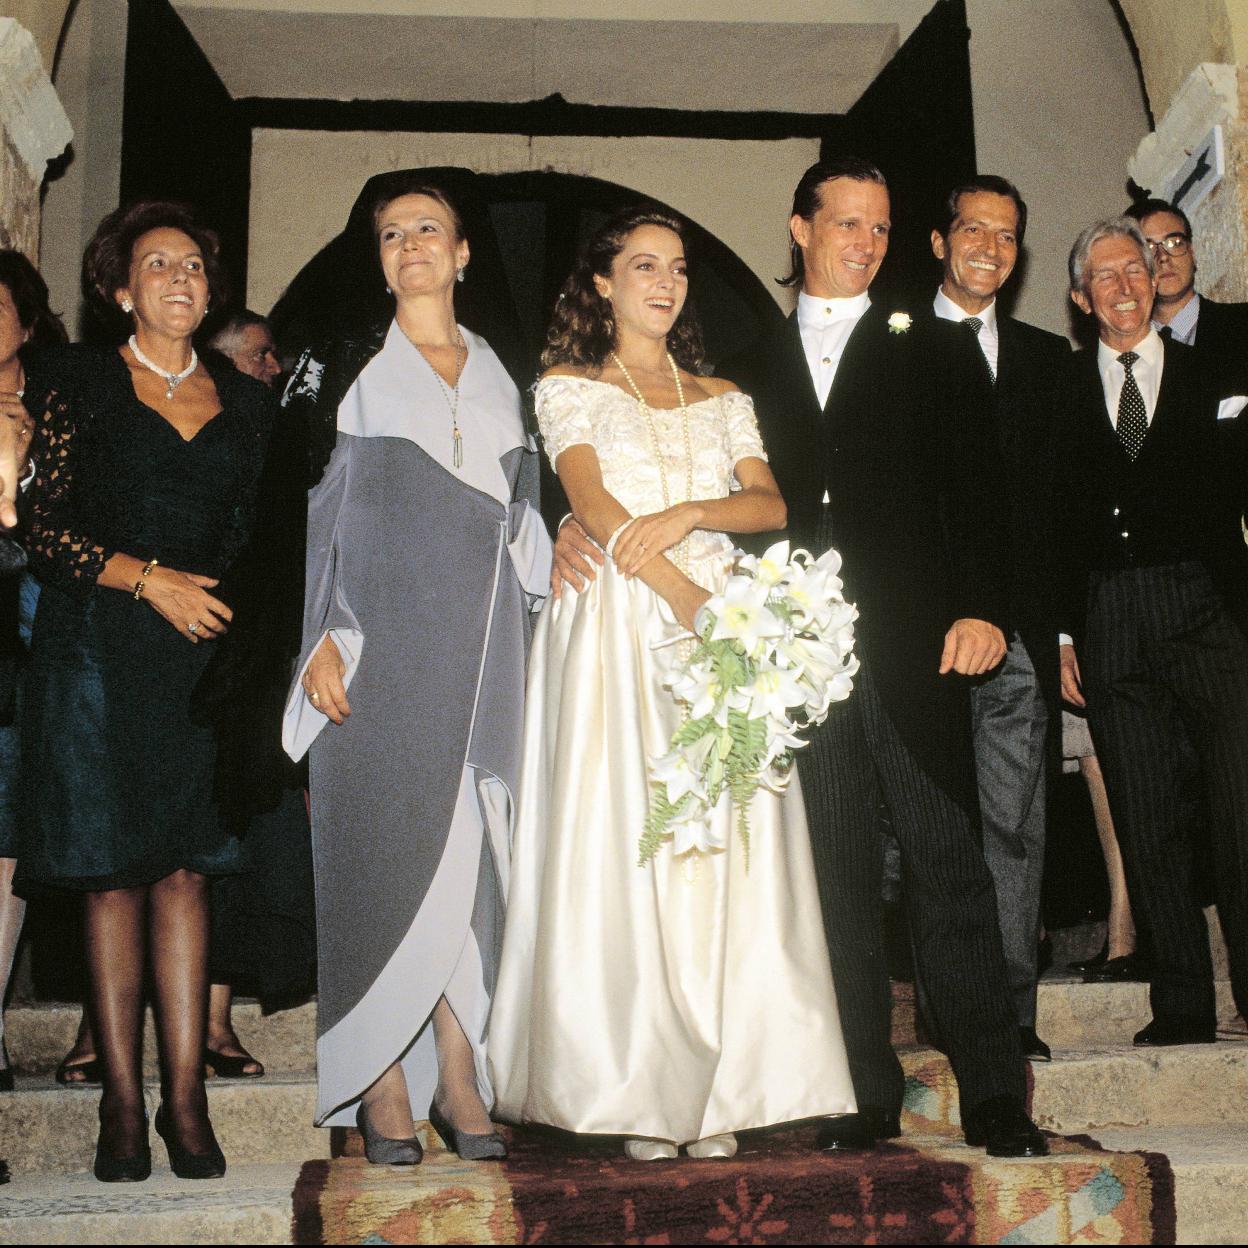 La boda de Sonsoles Suárez y Pocholo Martínez-Bordiú: un evento con grandes  faltas, solo dos años de matrimonio y vidas muy diferentes | Mujer Hoy